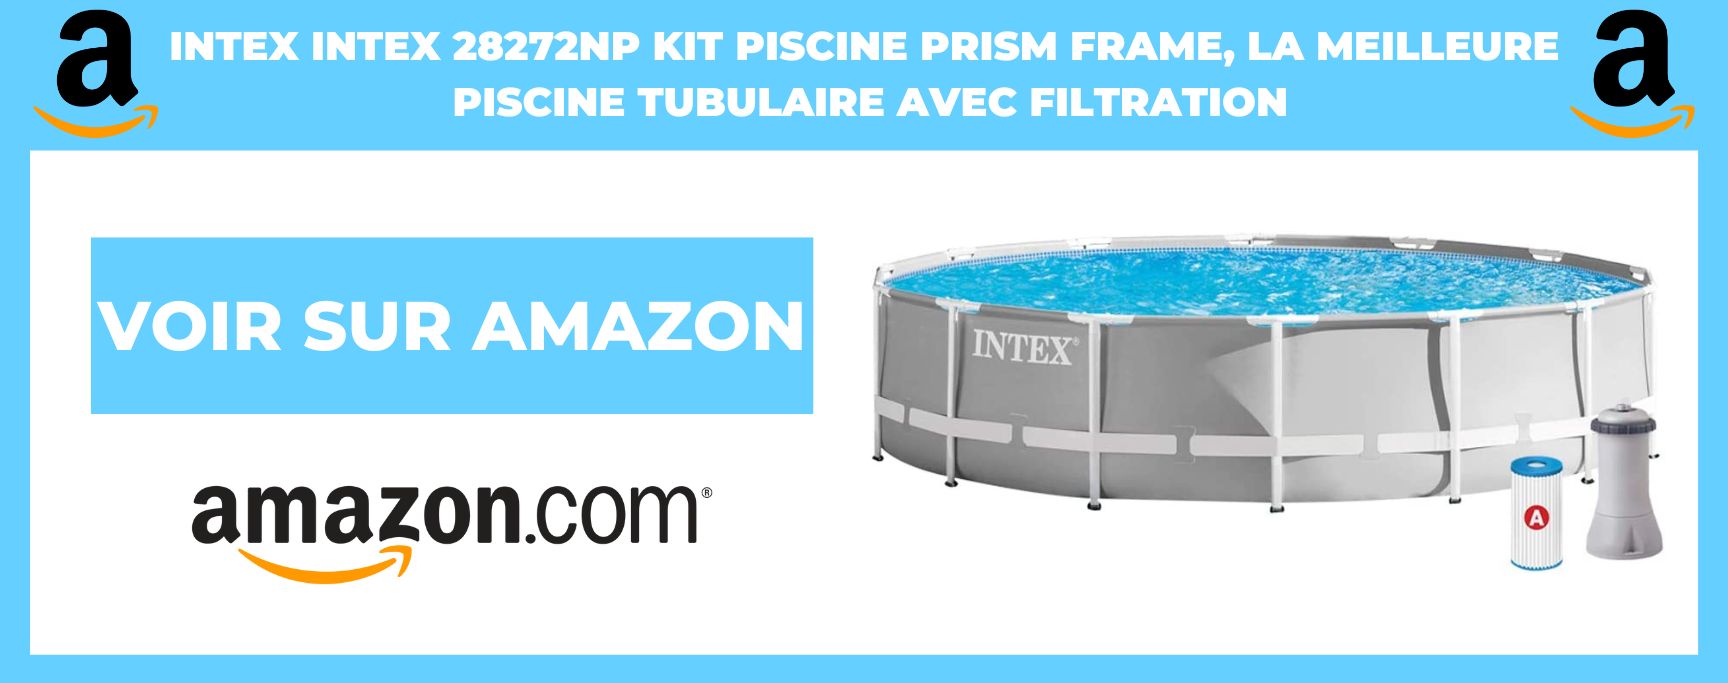 INTEX 26720NP kit piscine prism frame